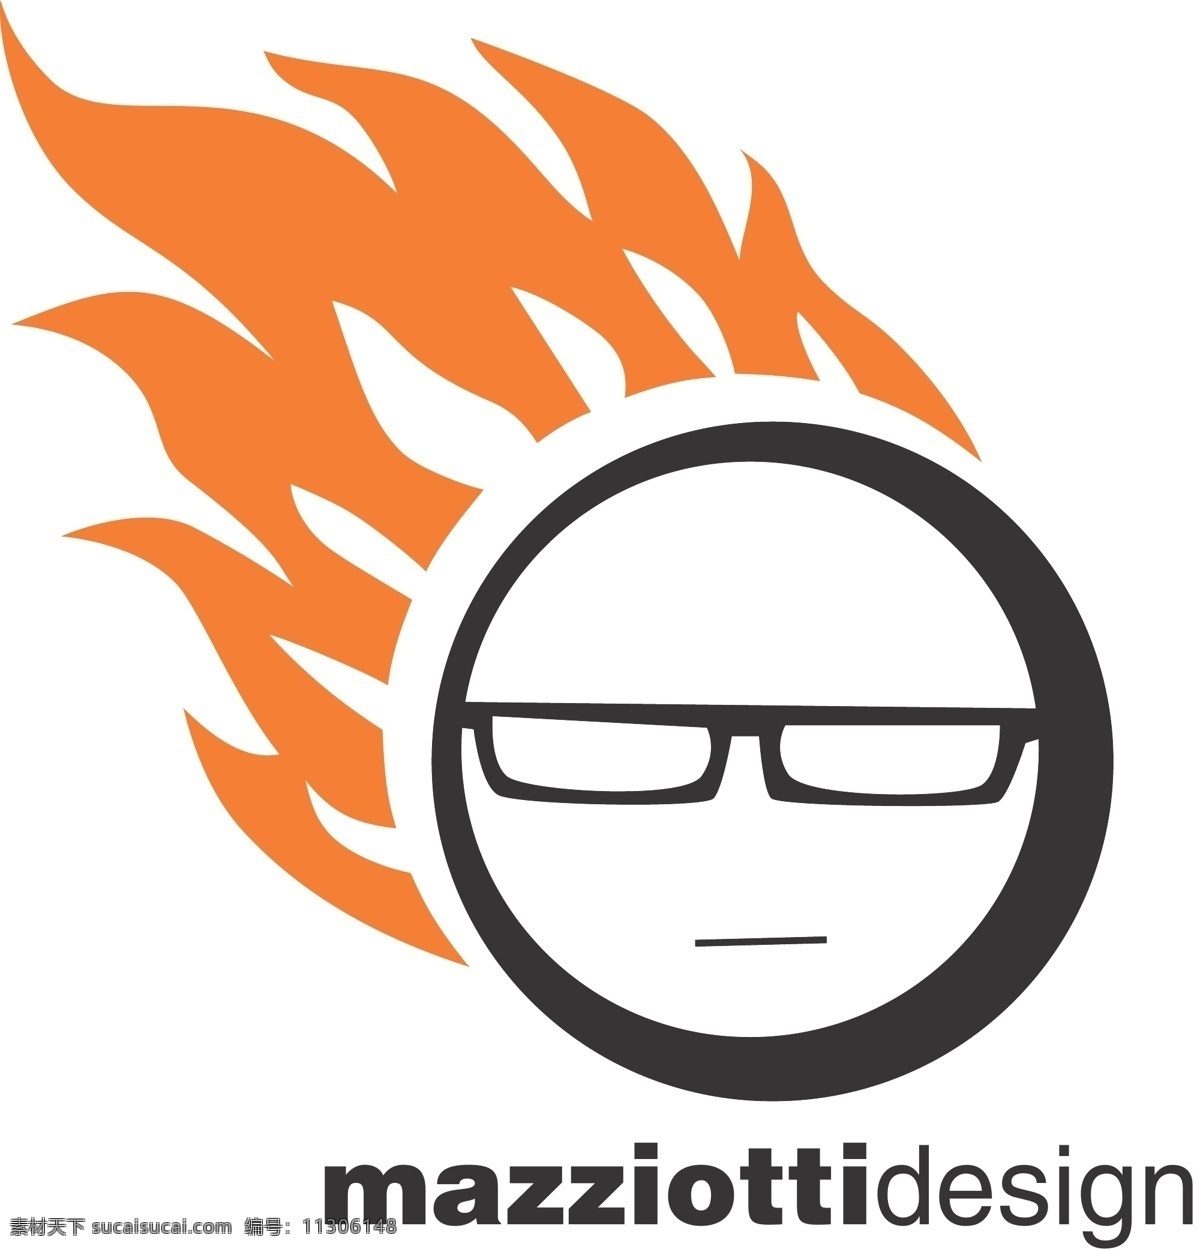 巴西 免费 马齐 奥蒂 标识 logo psd源文件 logo设计